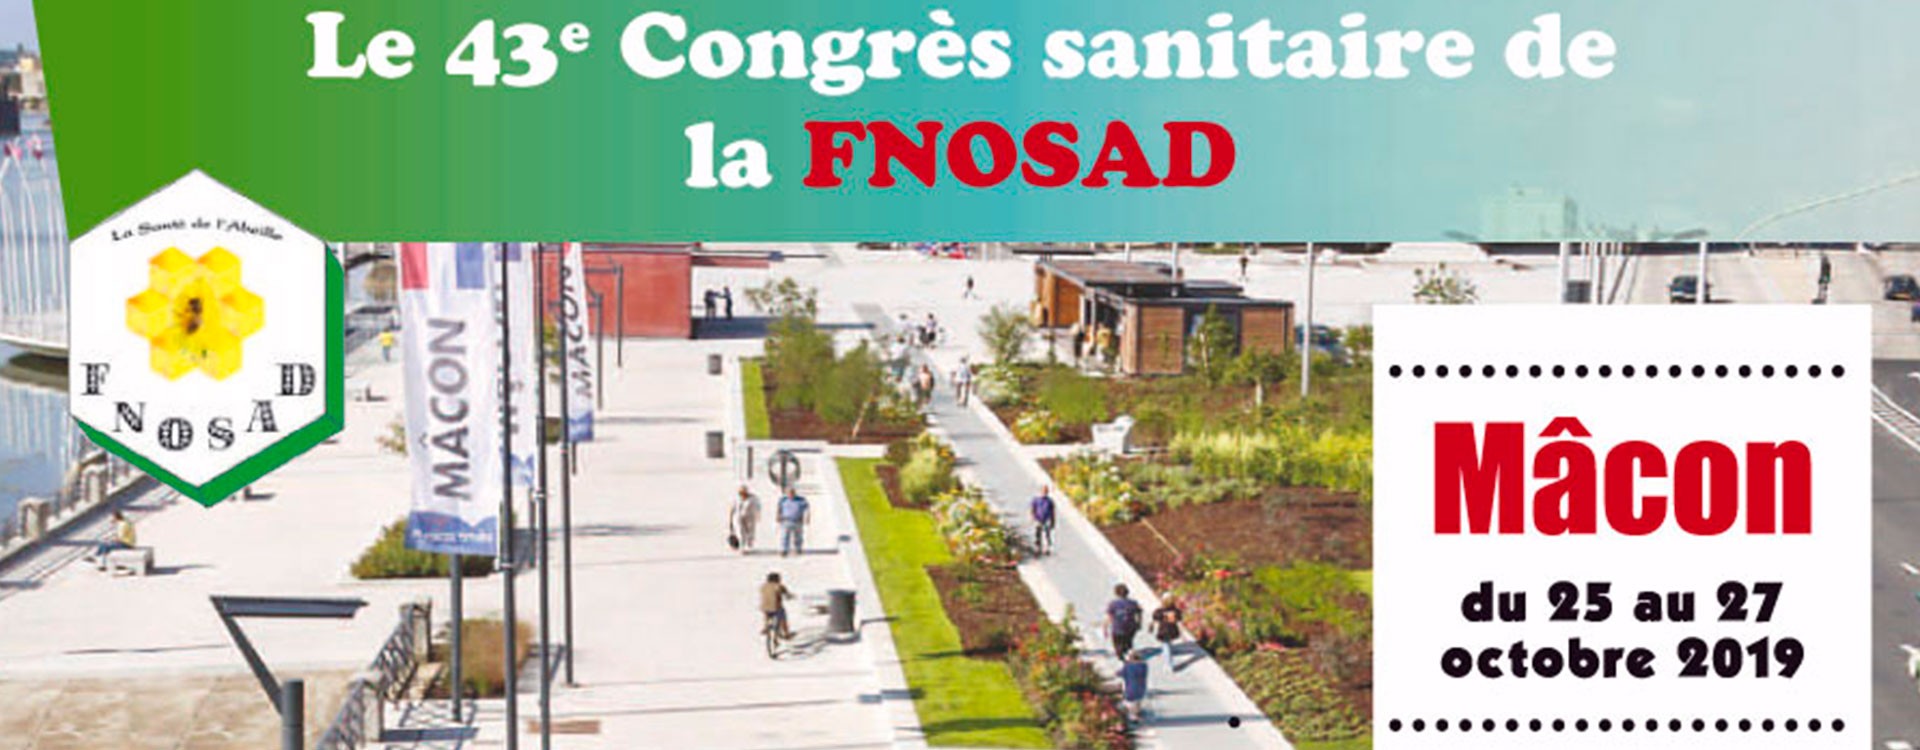 43ème Congrès sanitaire de la FNOSAD